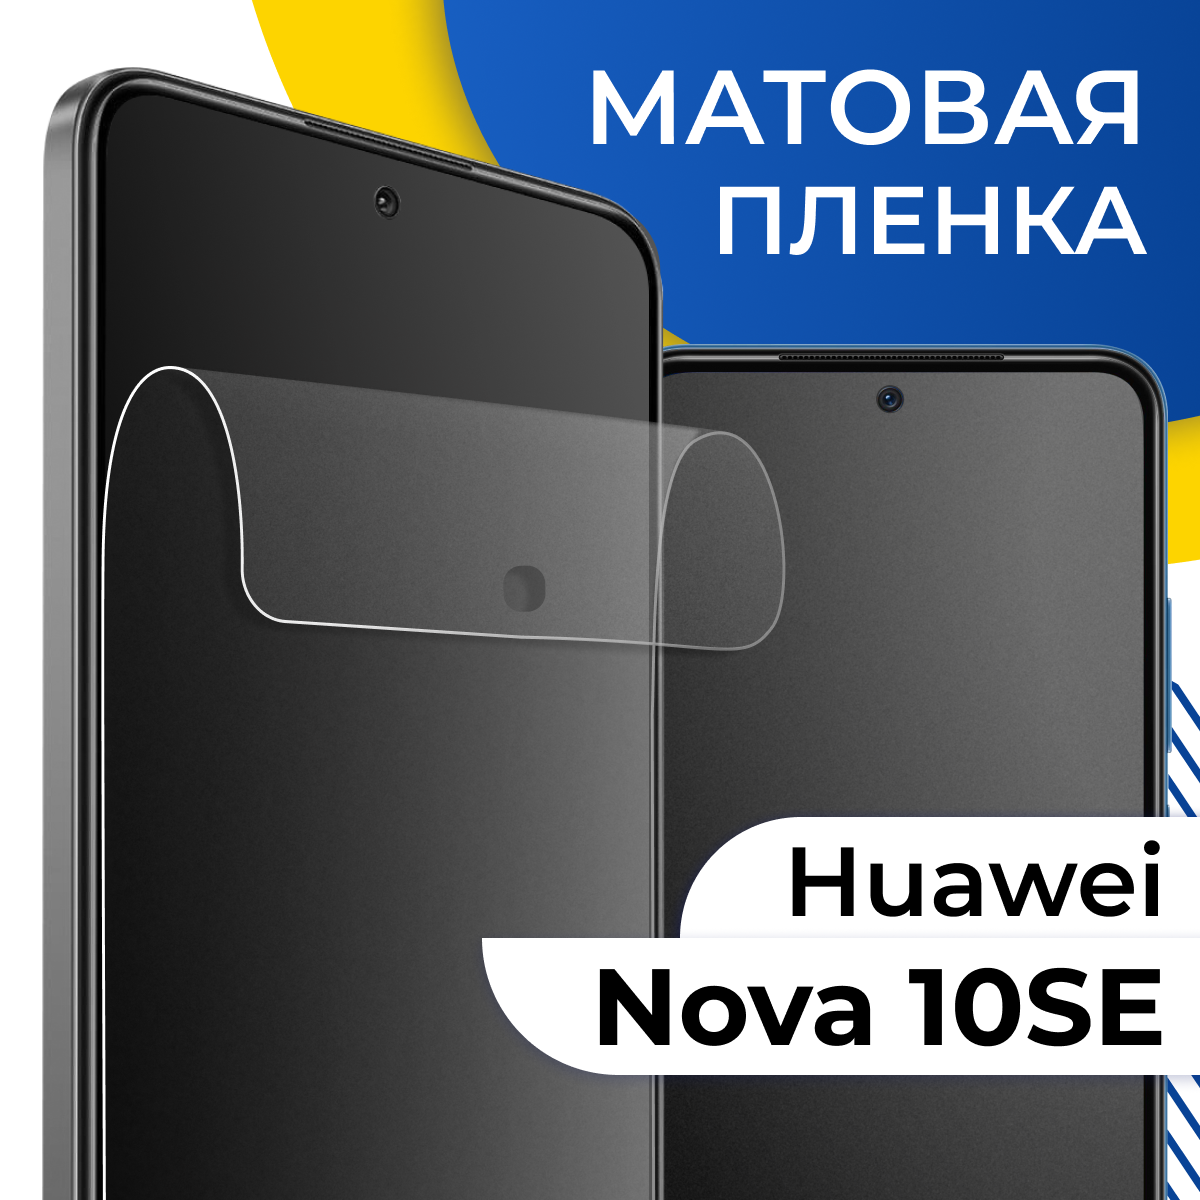 Матовая гидрогелевая пленка для телефона Huawei Nova 10 SE / Самовосстанавливающаяся защитная пленка на Хуавей Нова 10 СЕ с олеофобным покрытием